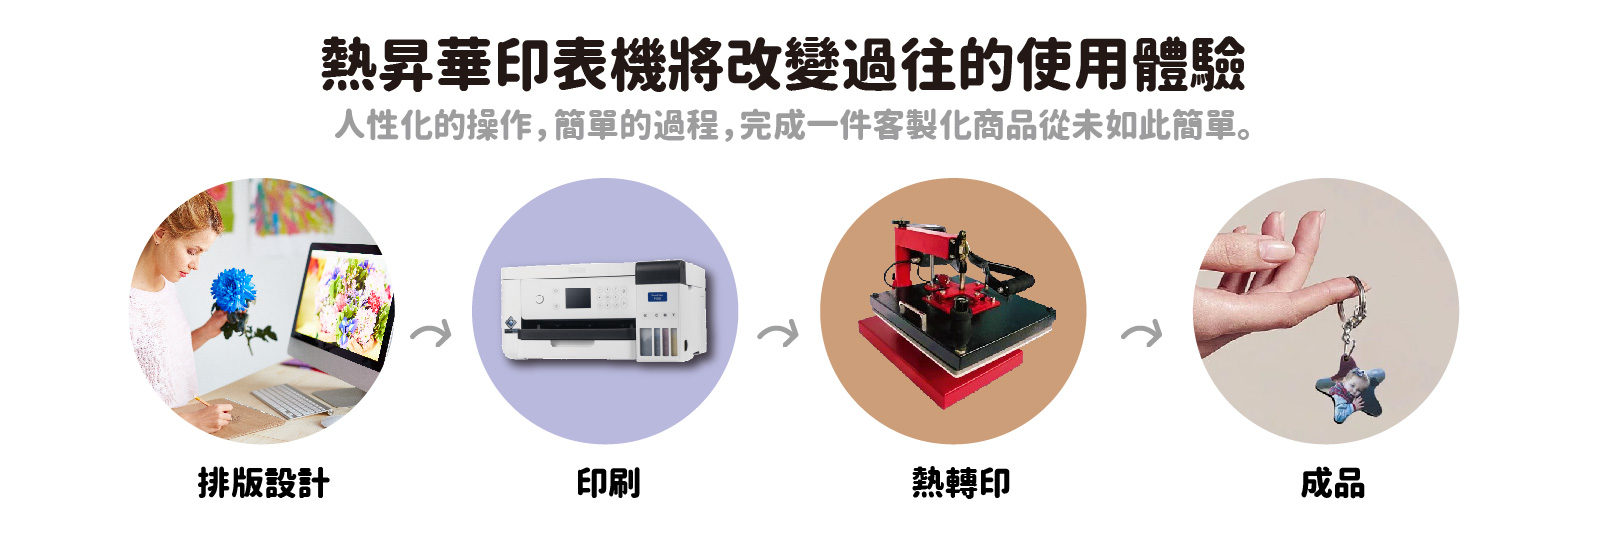 2022熱昇華數位印表機F130與F530展示會13 1600x549 1